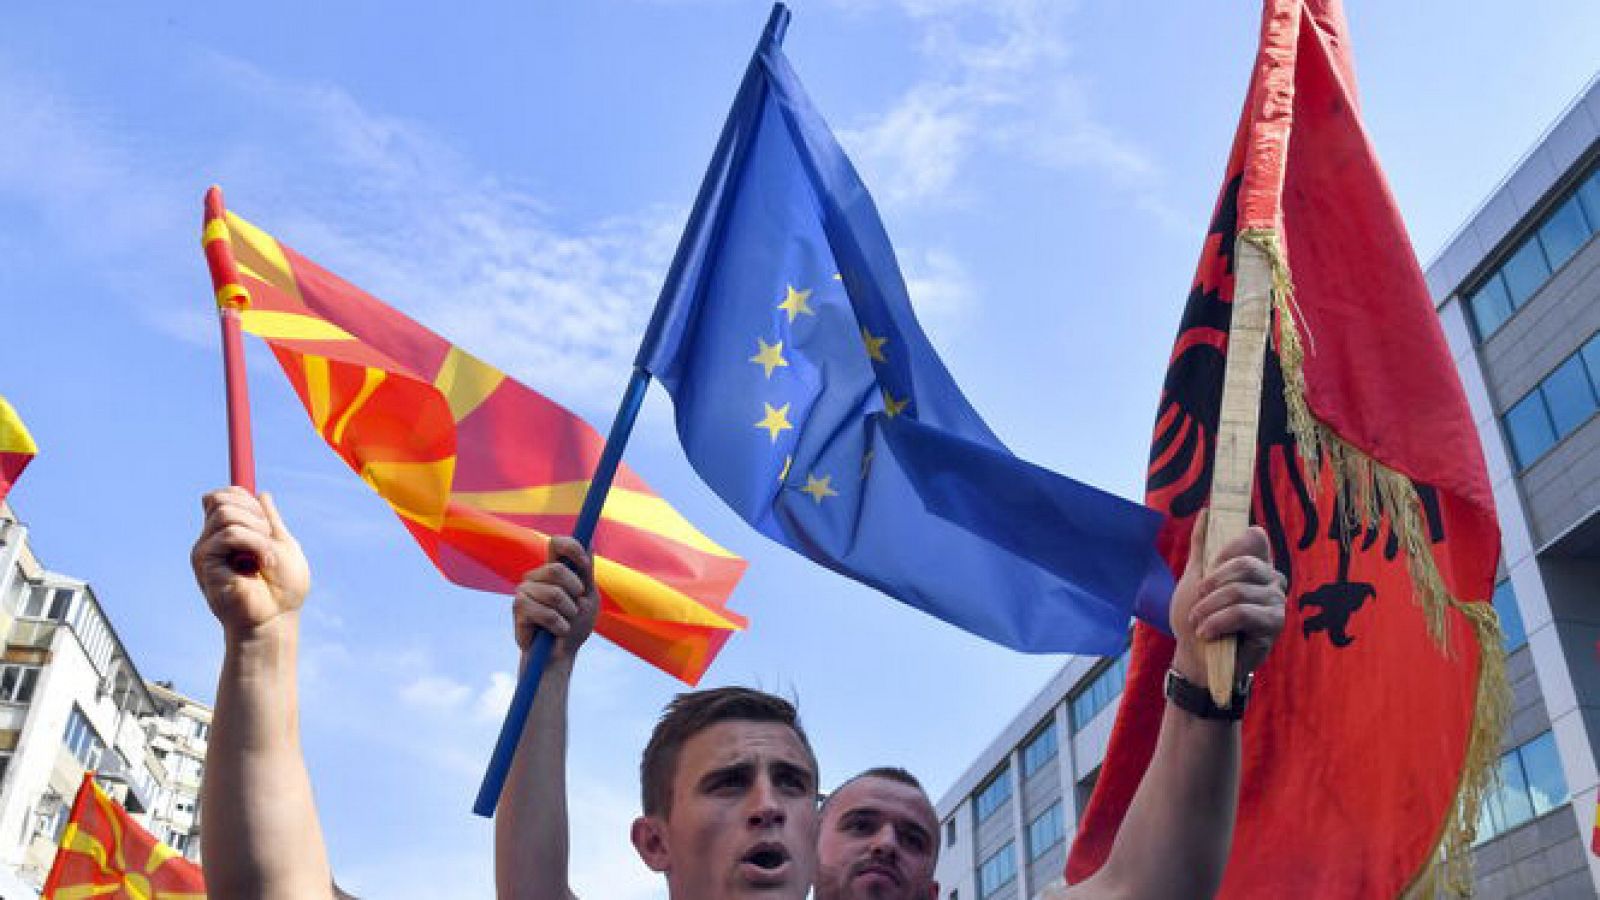  Europa abierta - ¿Por qué Albania y Macedonia no entran en la UE? - escuchar ahora